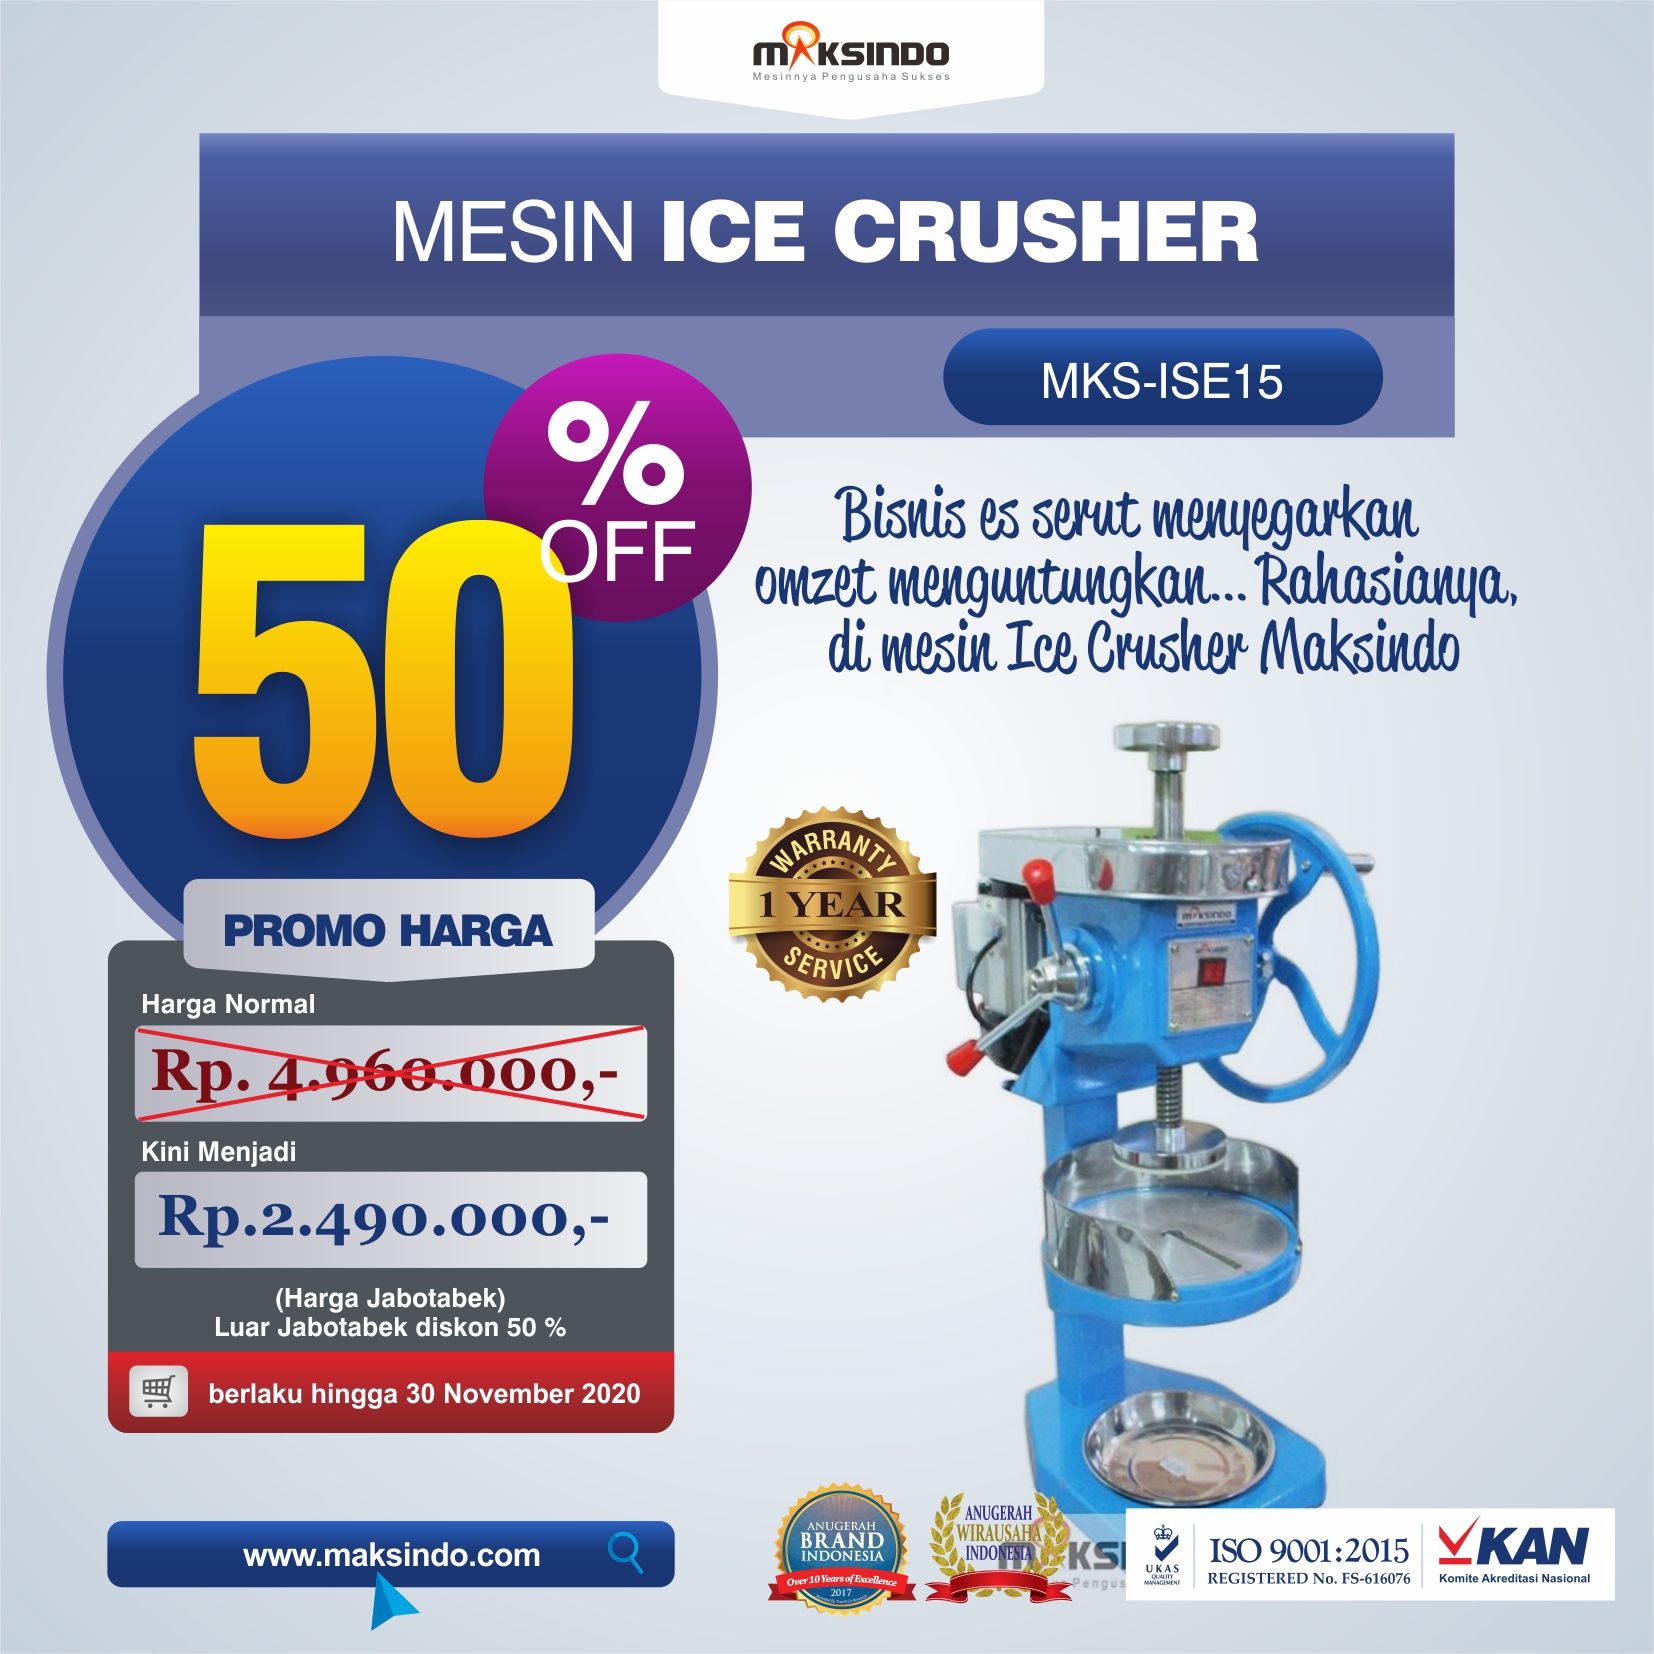 Jual Mesin Ice Crusher MKS-ISE15 di Bekasi